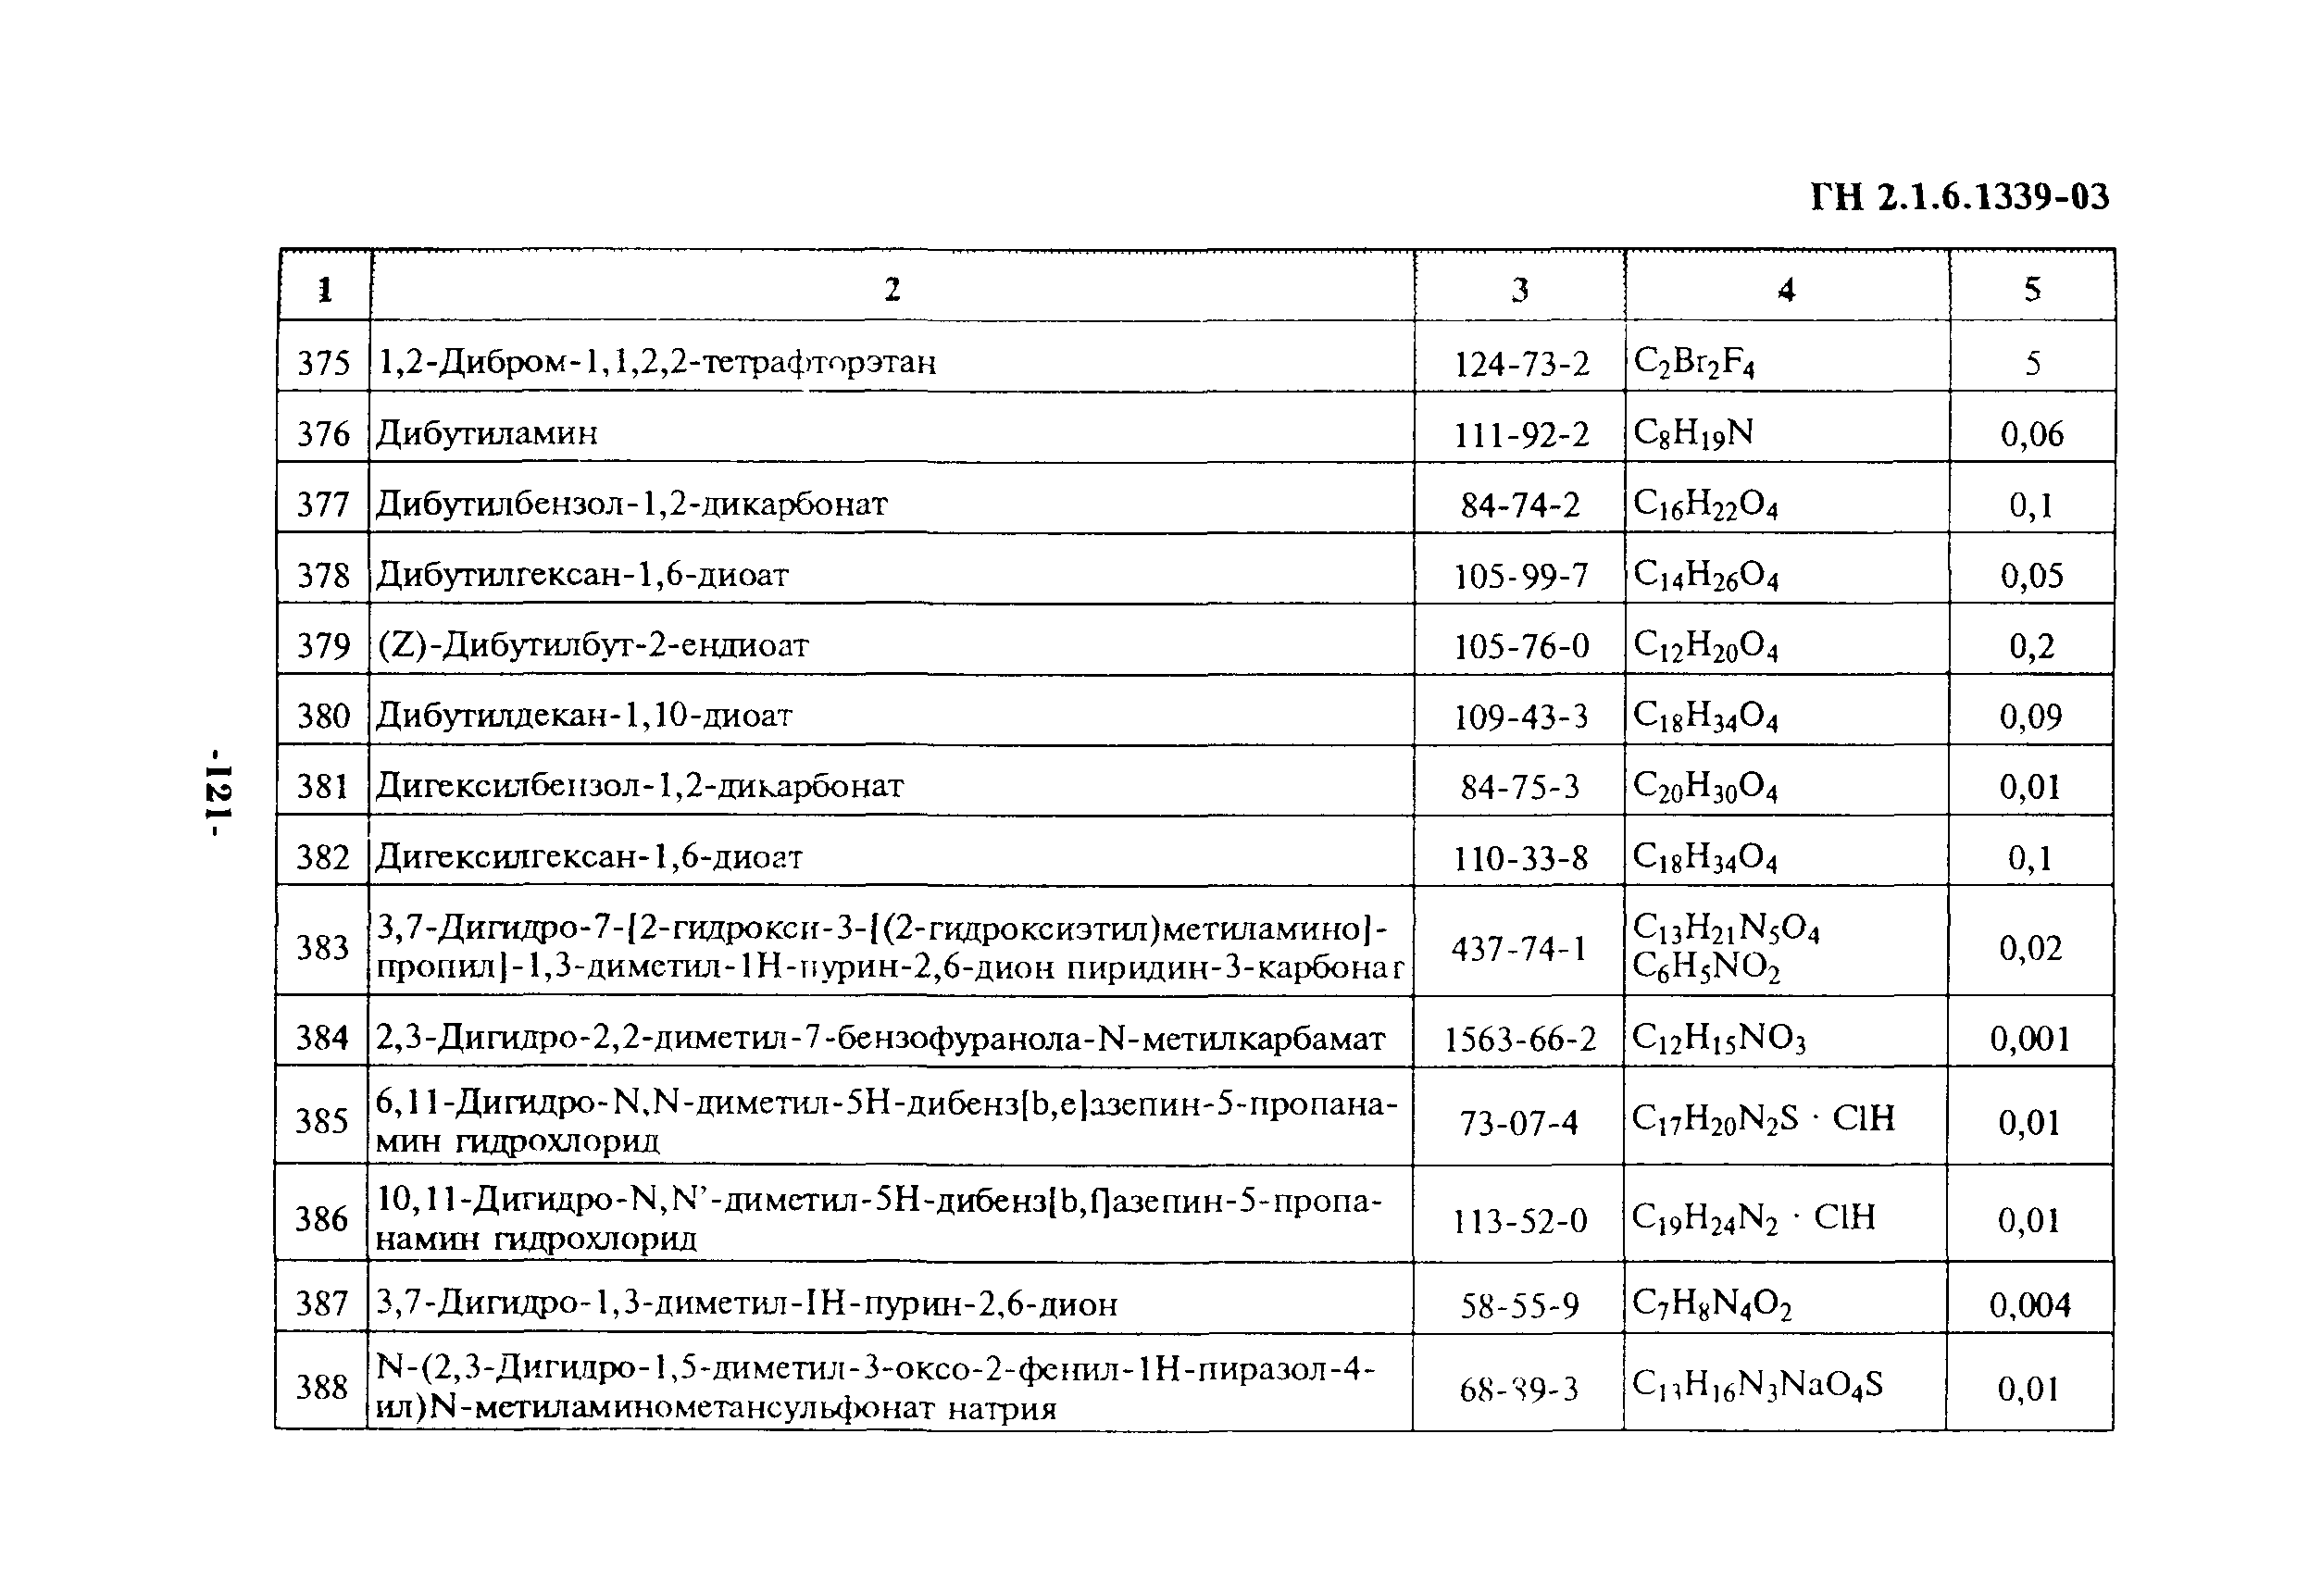 ГН 2.1.6.1339-03